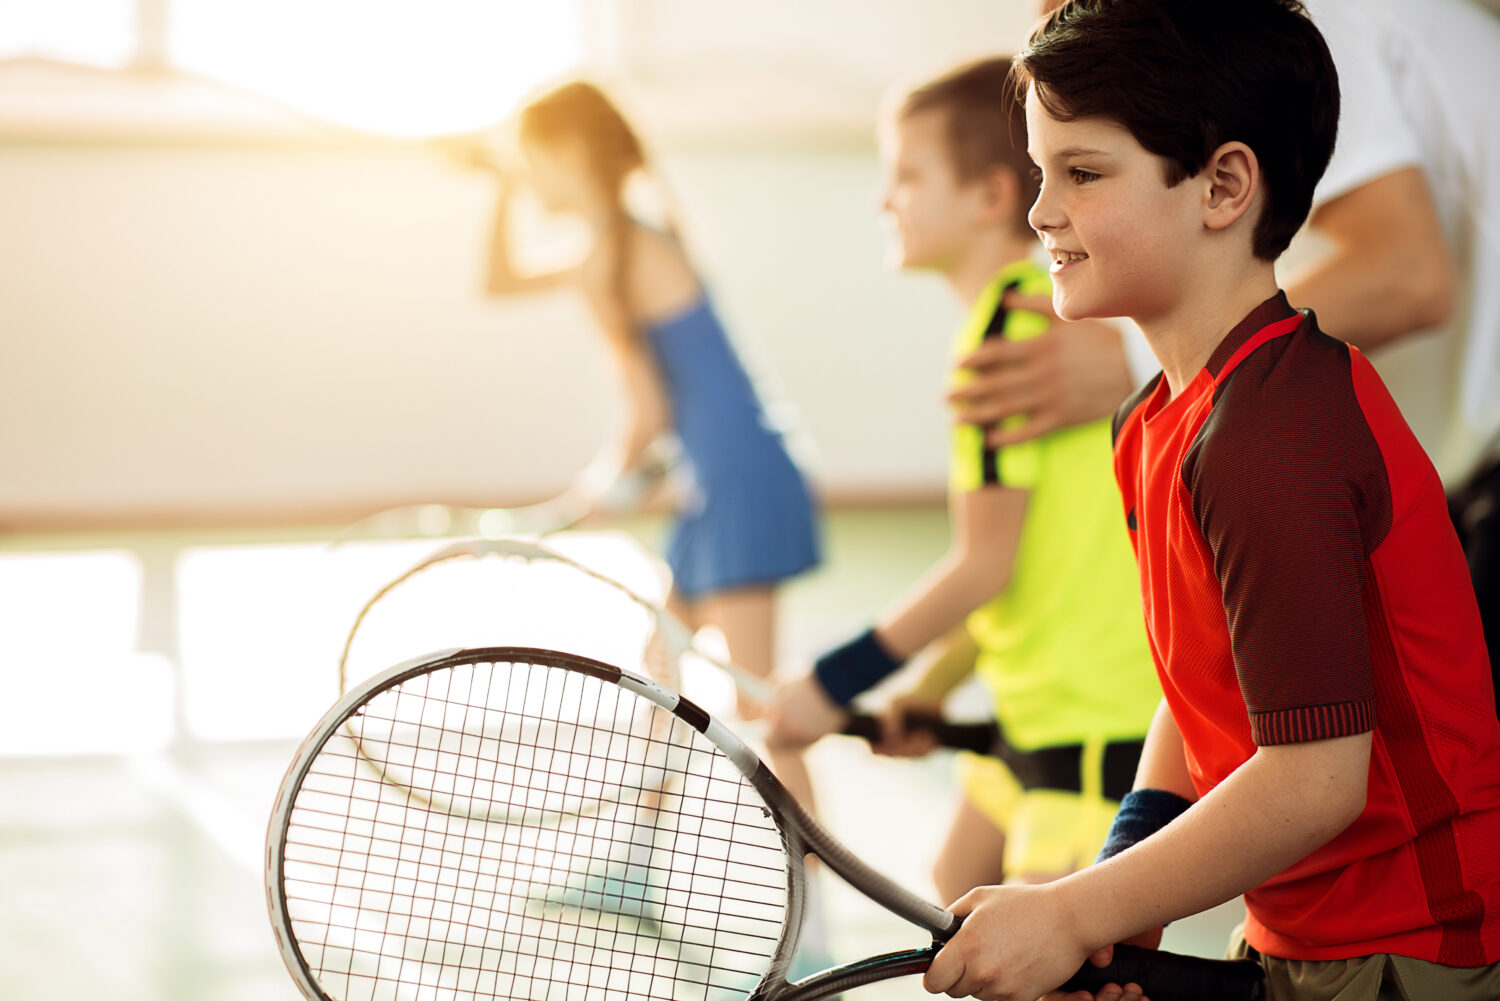 ETPA zomerstages padel & tennis voor kleuters en kids van 3-12 jaar - Elite Tennis & Padel Academy